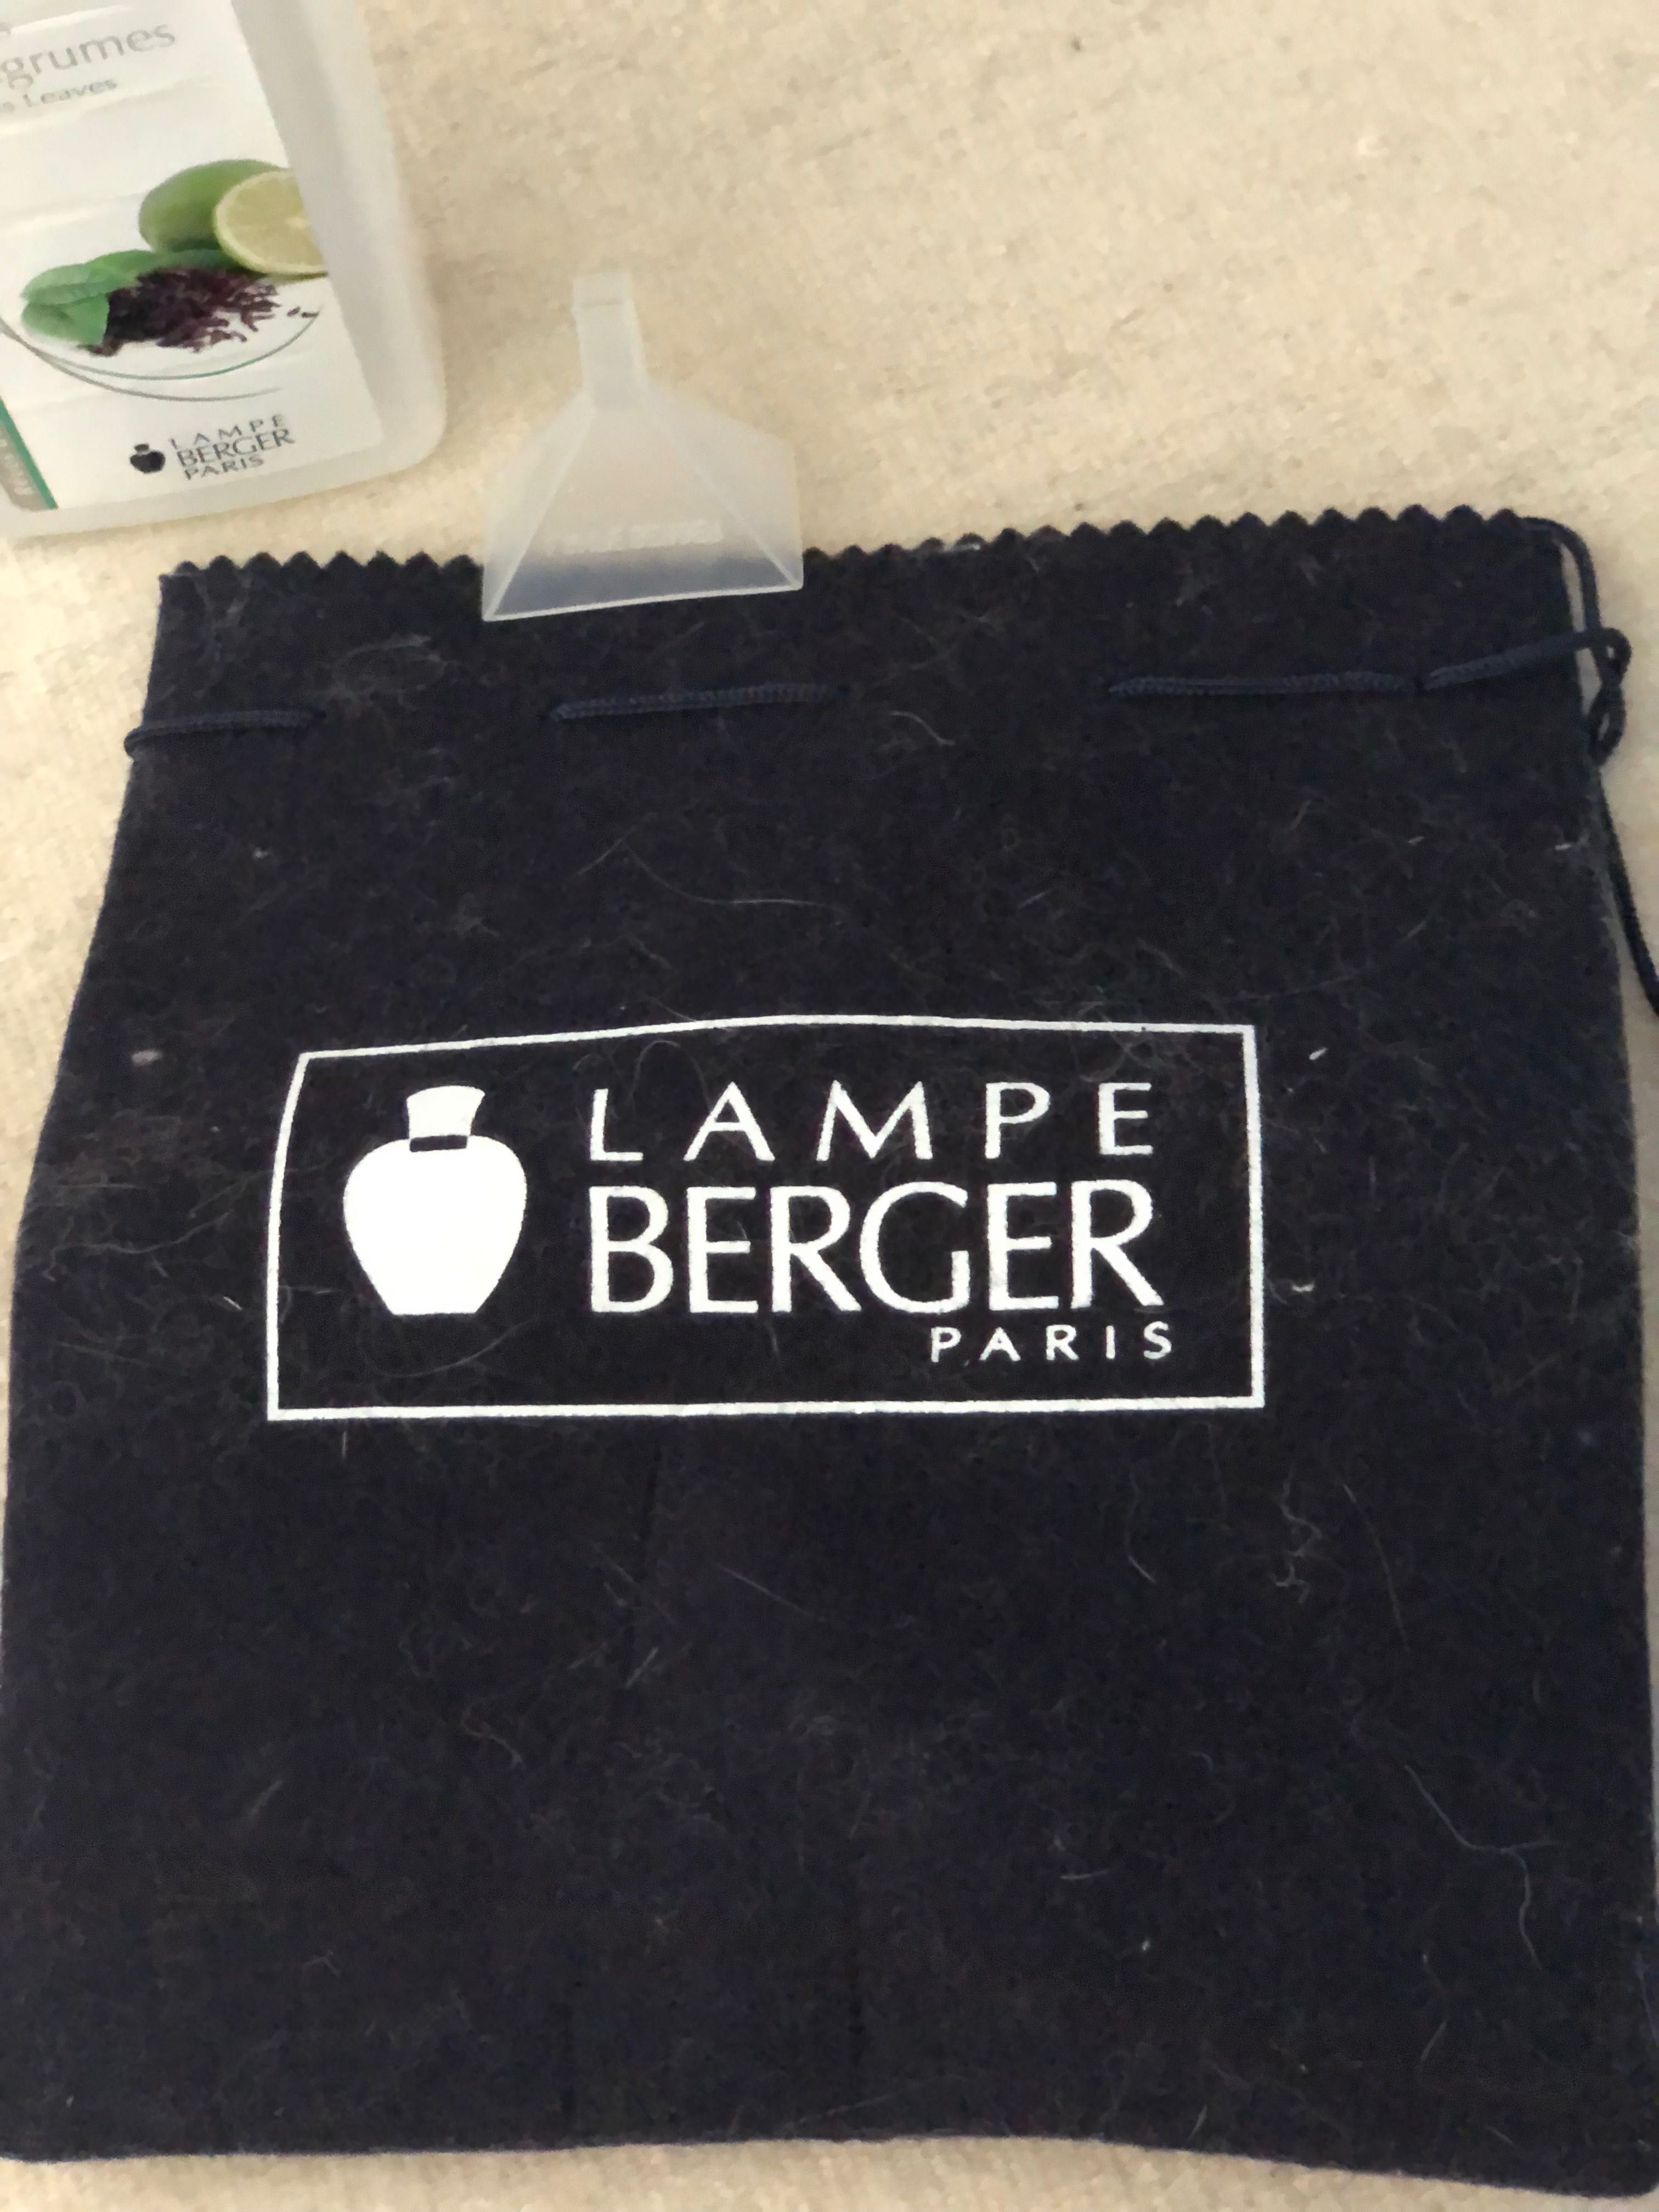 Lampă Berger și set de 6 uleiuri pentru lampa Berger - CADOU EXCELENT